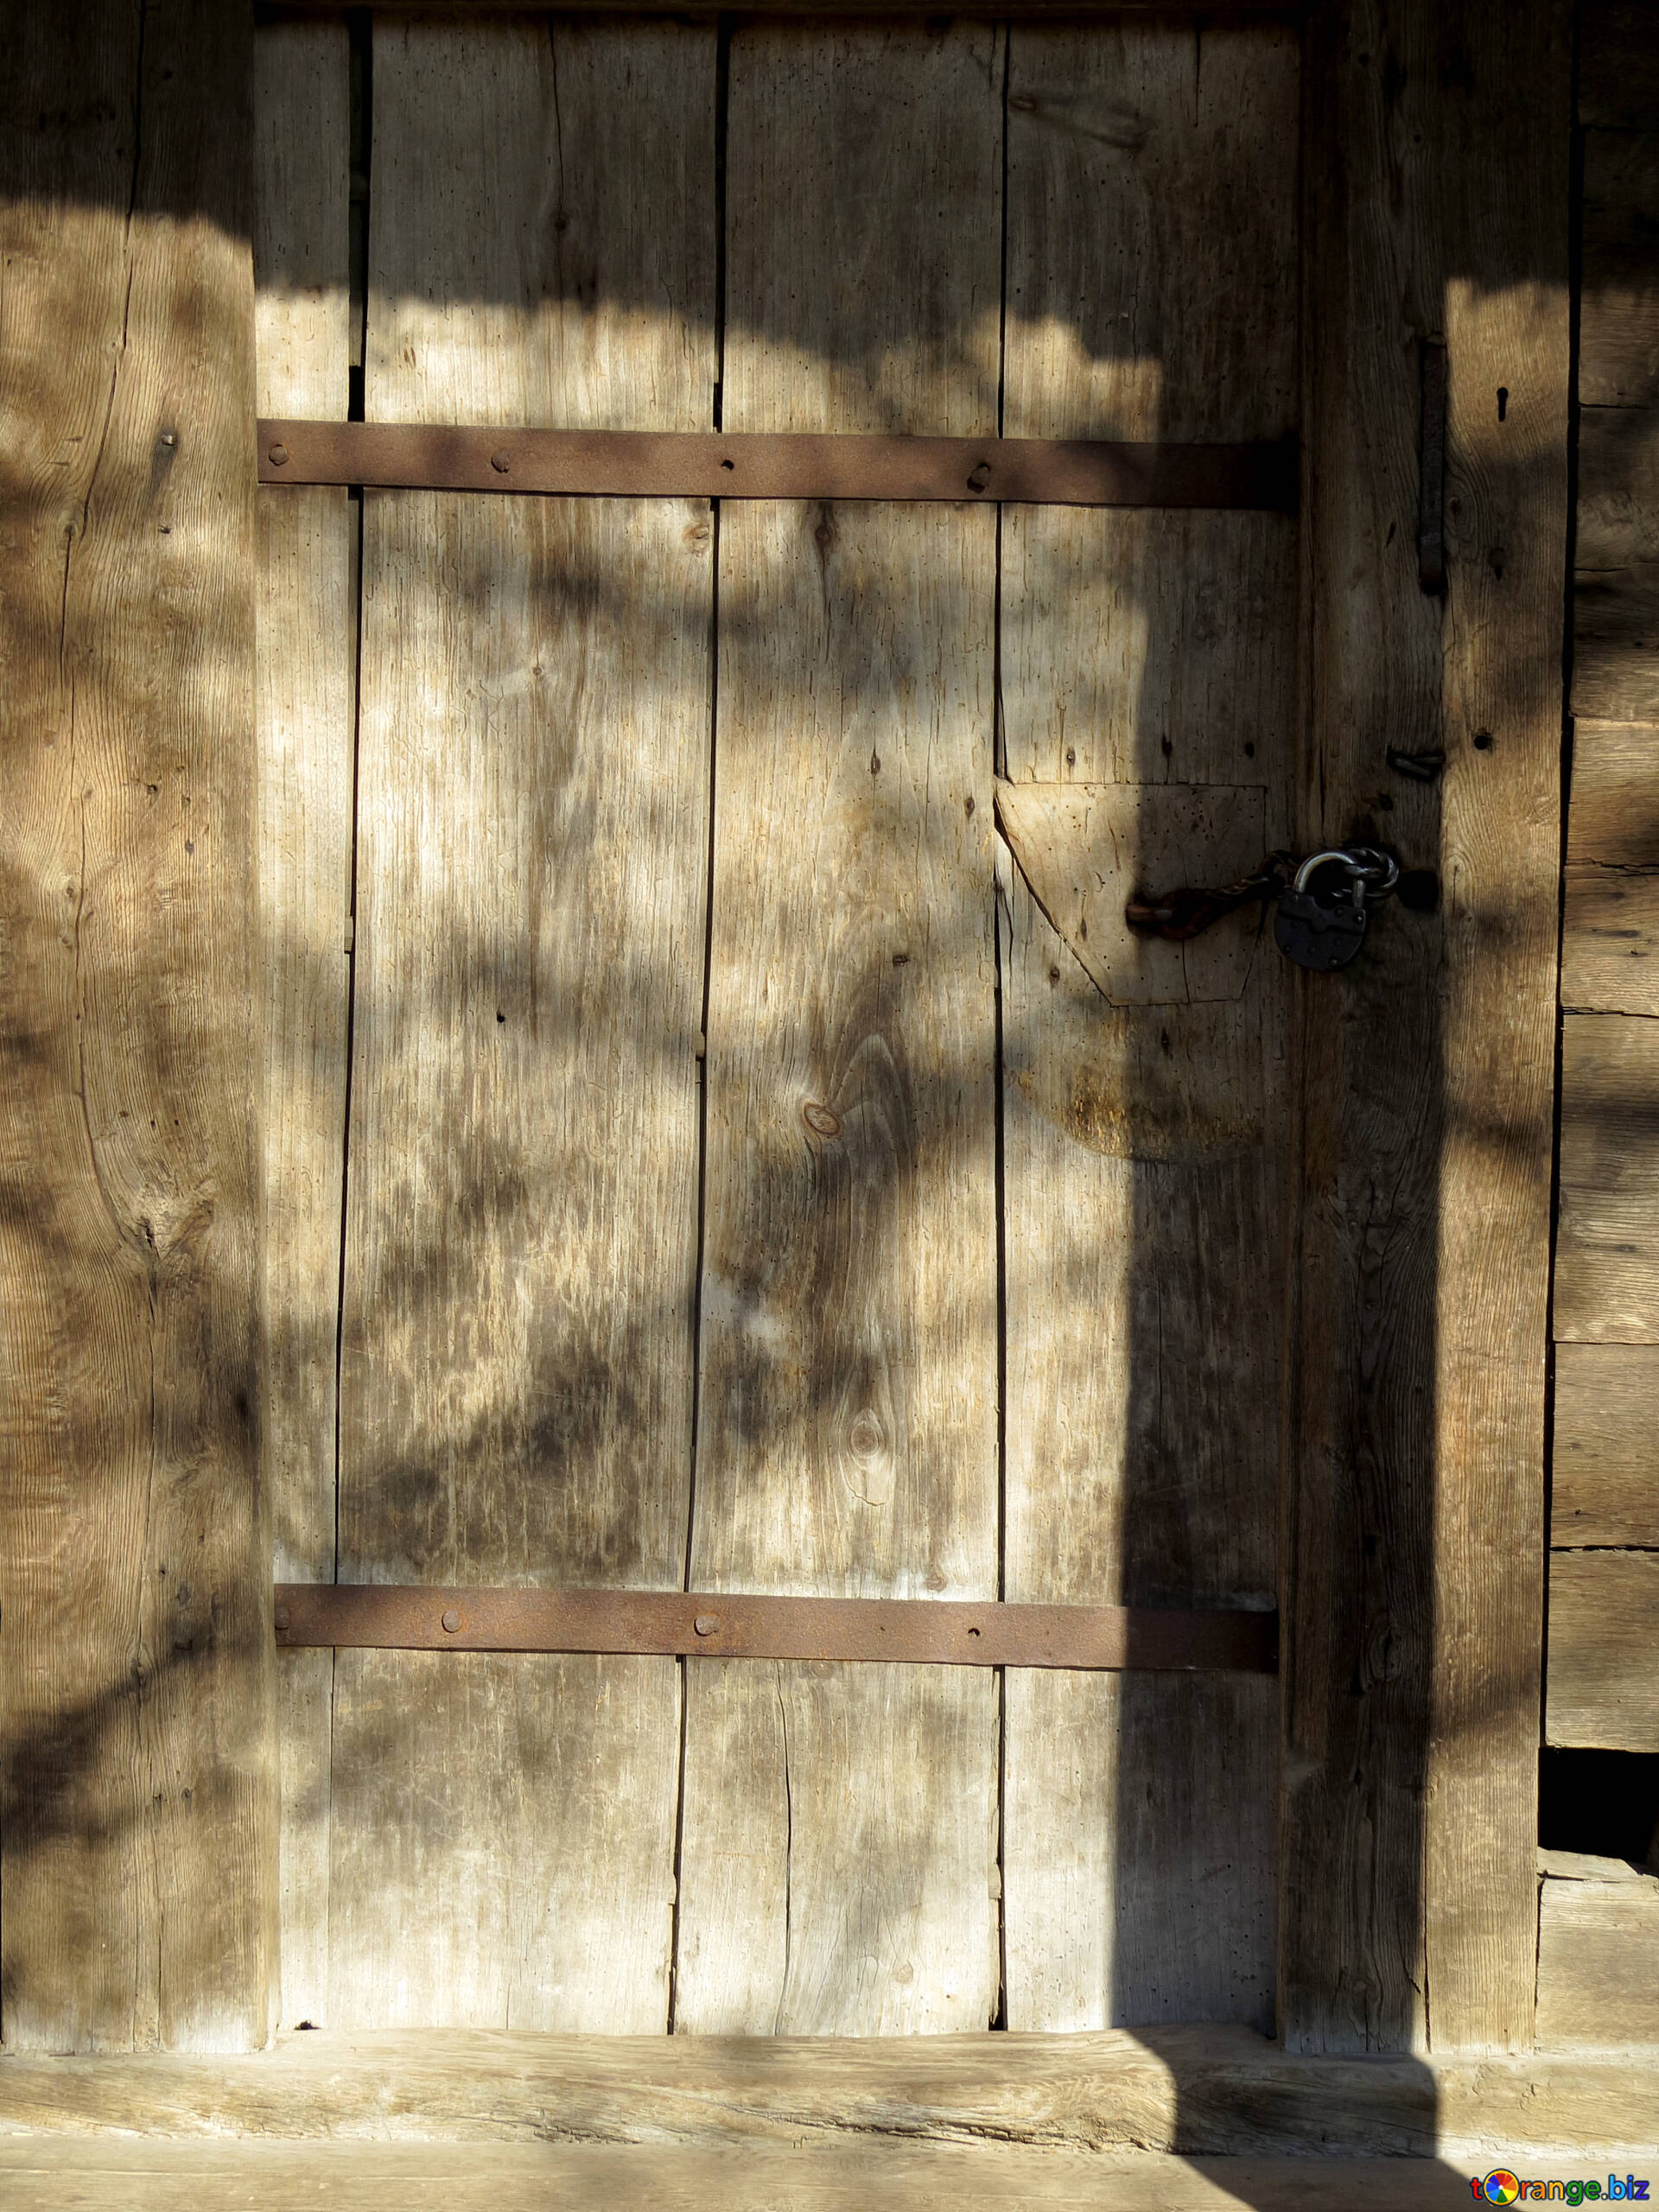 Сток дверей. Старинная дверь. Старинная деревянная дверь. Старинные двери из дерева. Текстура деревянной двери.